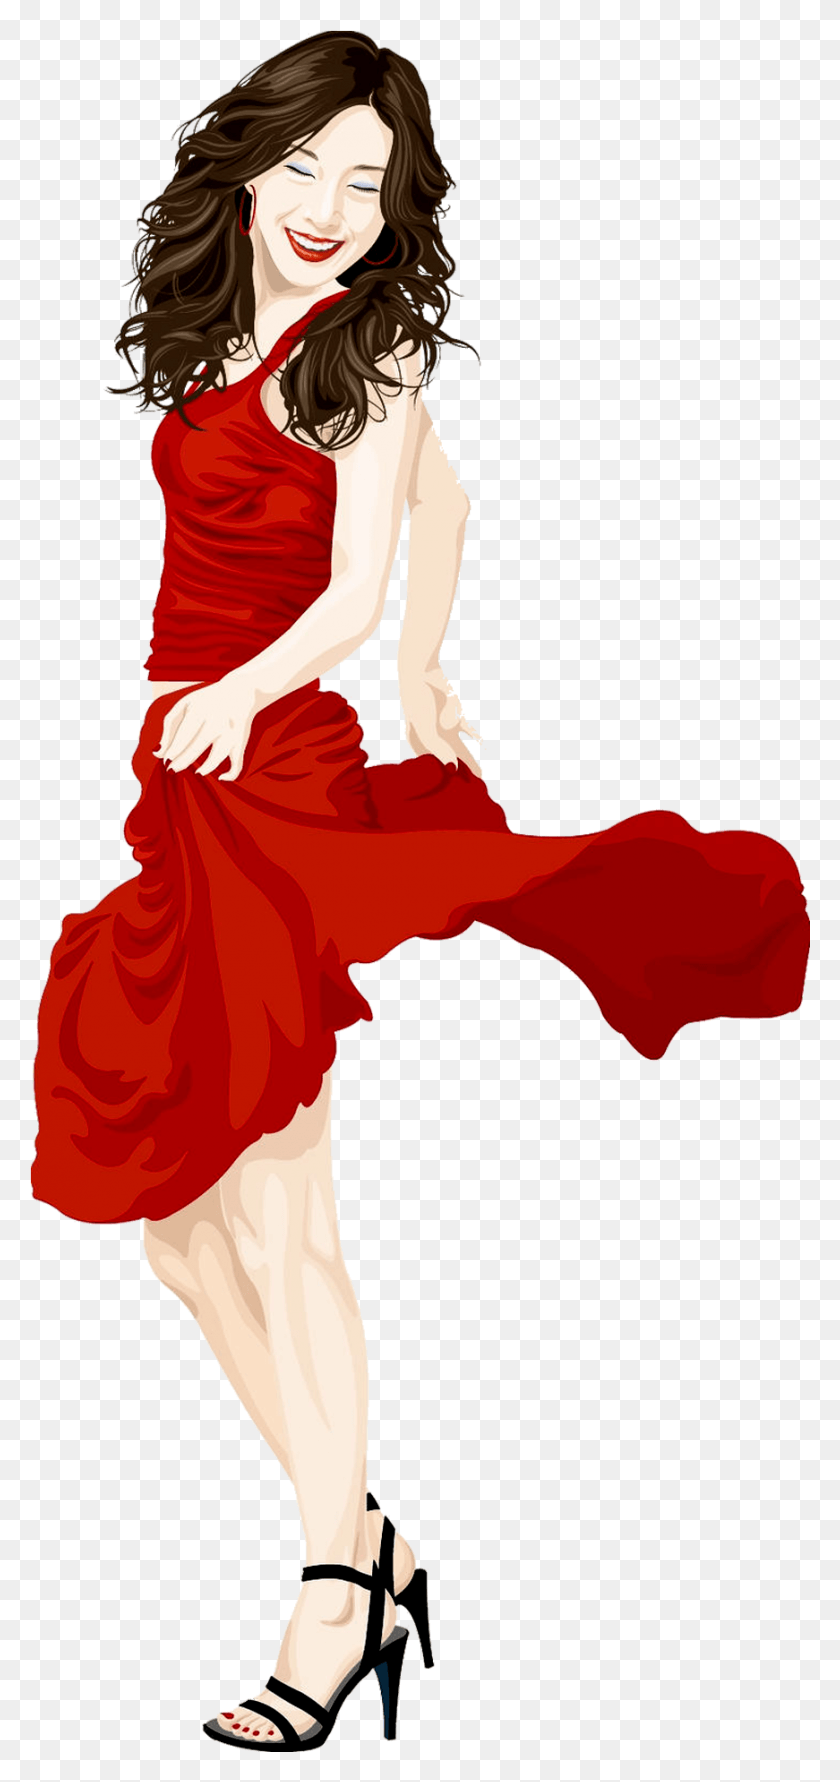 871x1923 La Dama En Vestido Rojo, Pose De Baile, Actividades De Ocio, Artista Hd Png